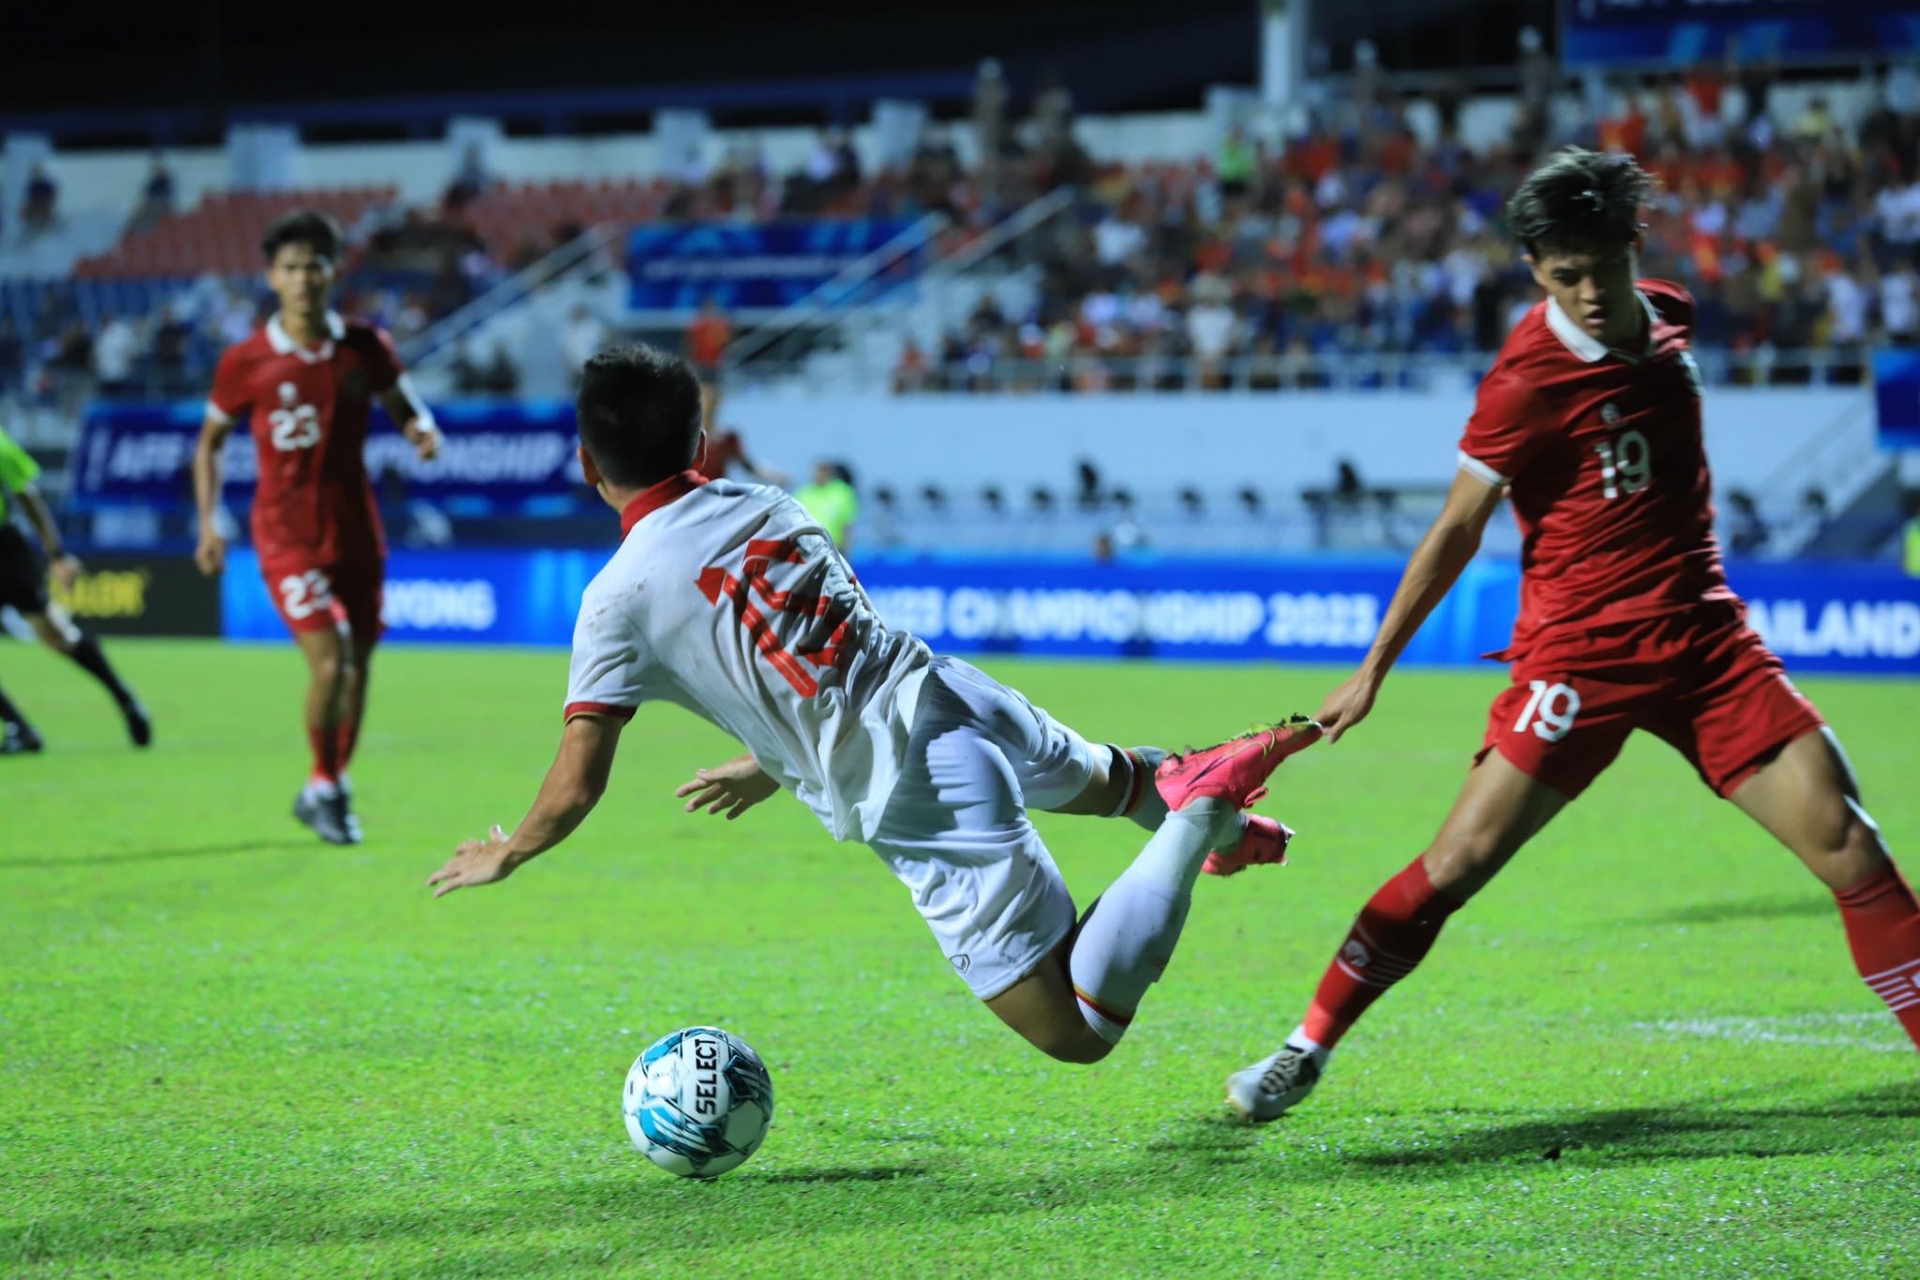 CĐV Indonesia “tấn công” trọng tài, tố U23 Việt Nam được thiên vị - Ảnh 1.